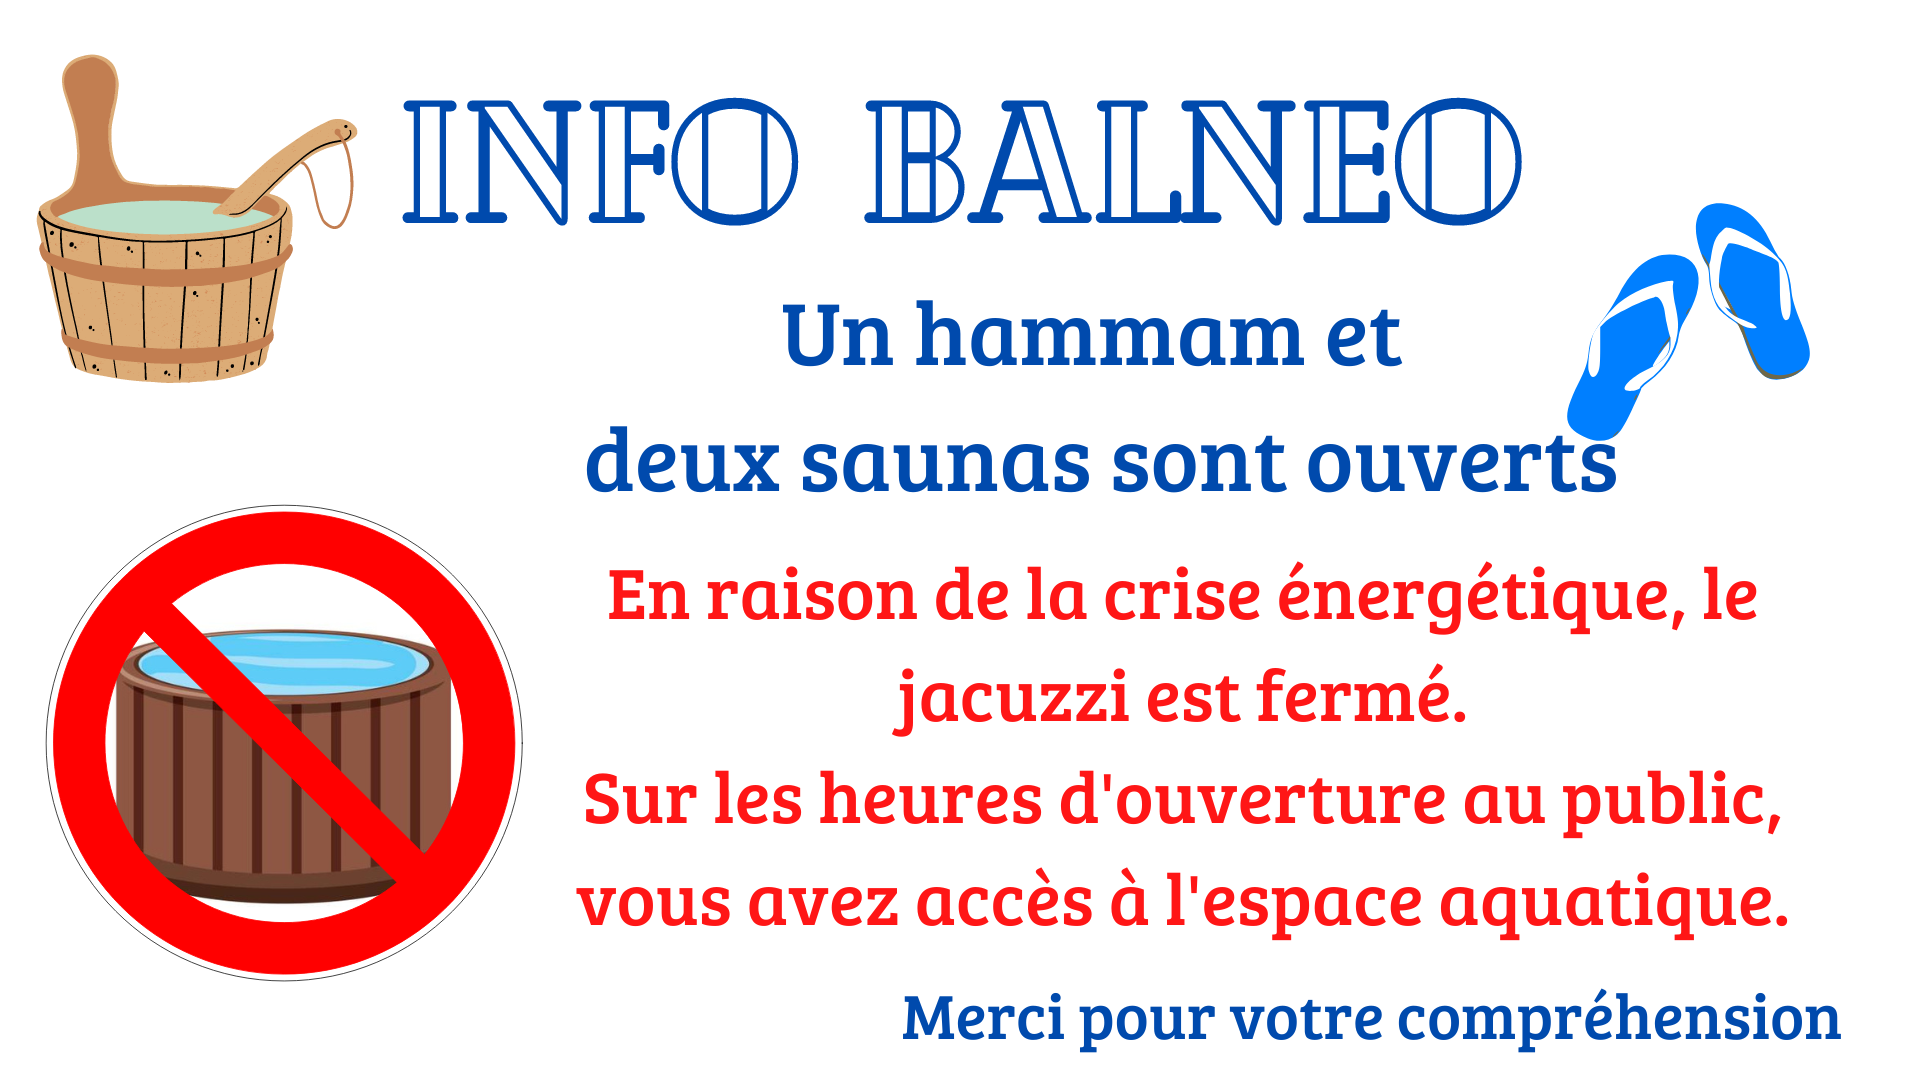 Info Balnéo - Jacuzzi fermé